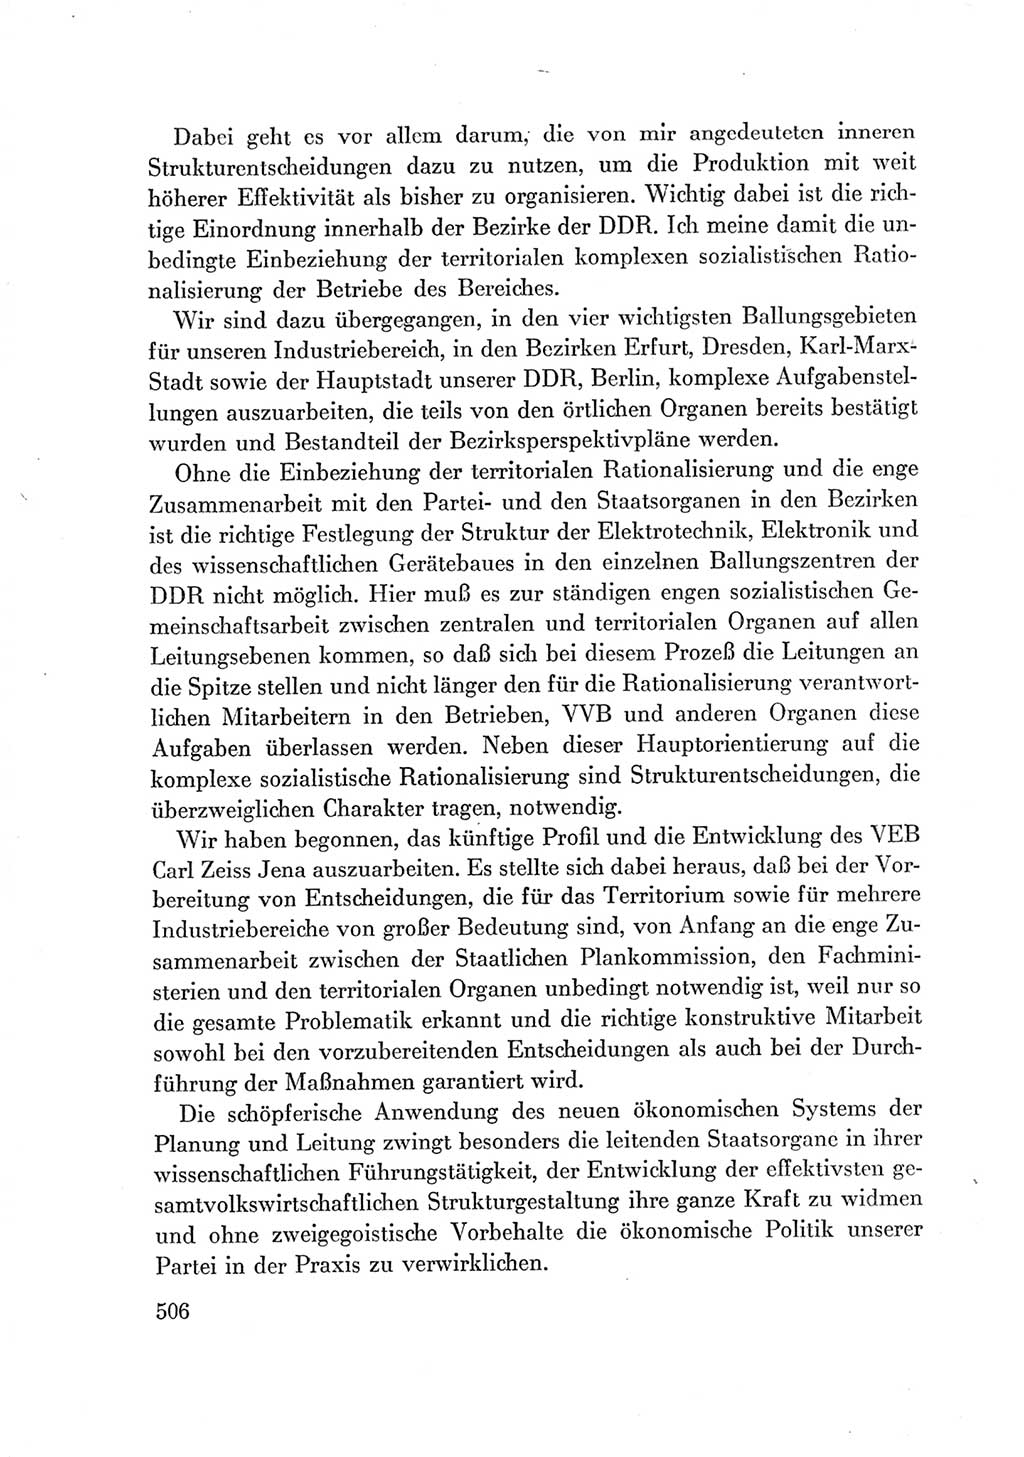 Protokoll der Verhandlungen des Ⅶ. Parteitages der Sozialistischen Einheitspartei Deutschlands (SED) [Deutsche Demokratische Republik (DDR)] 1967, Band Ⅰ, Seite 506 (Prot. Verh. Ⅶ. PT SED DDR 1967, Bd. Ⅰ, S. 506)